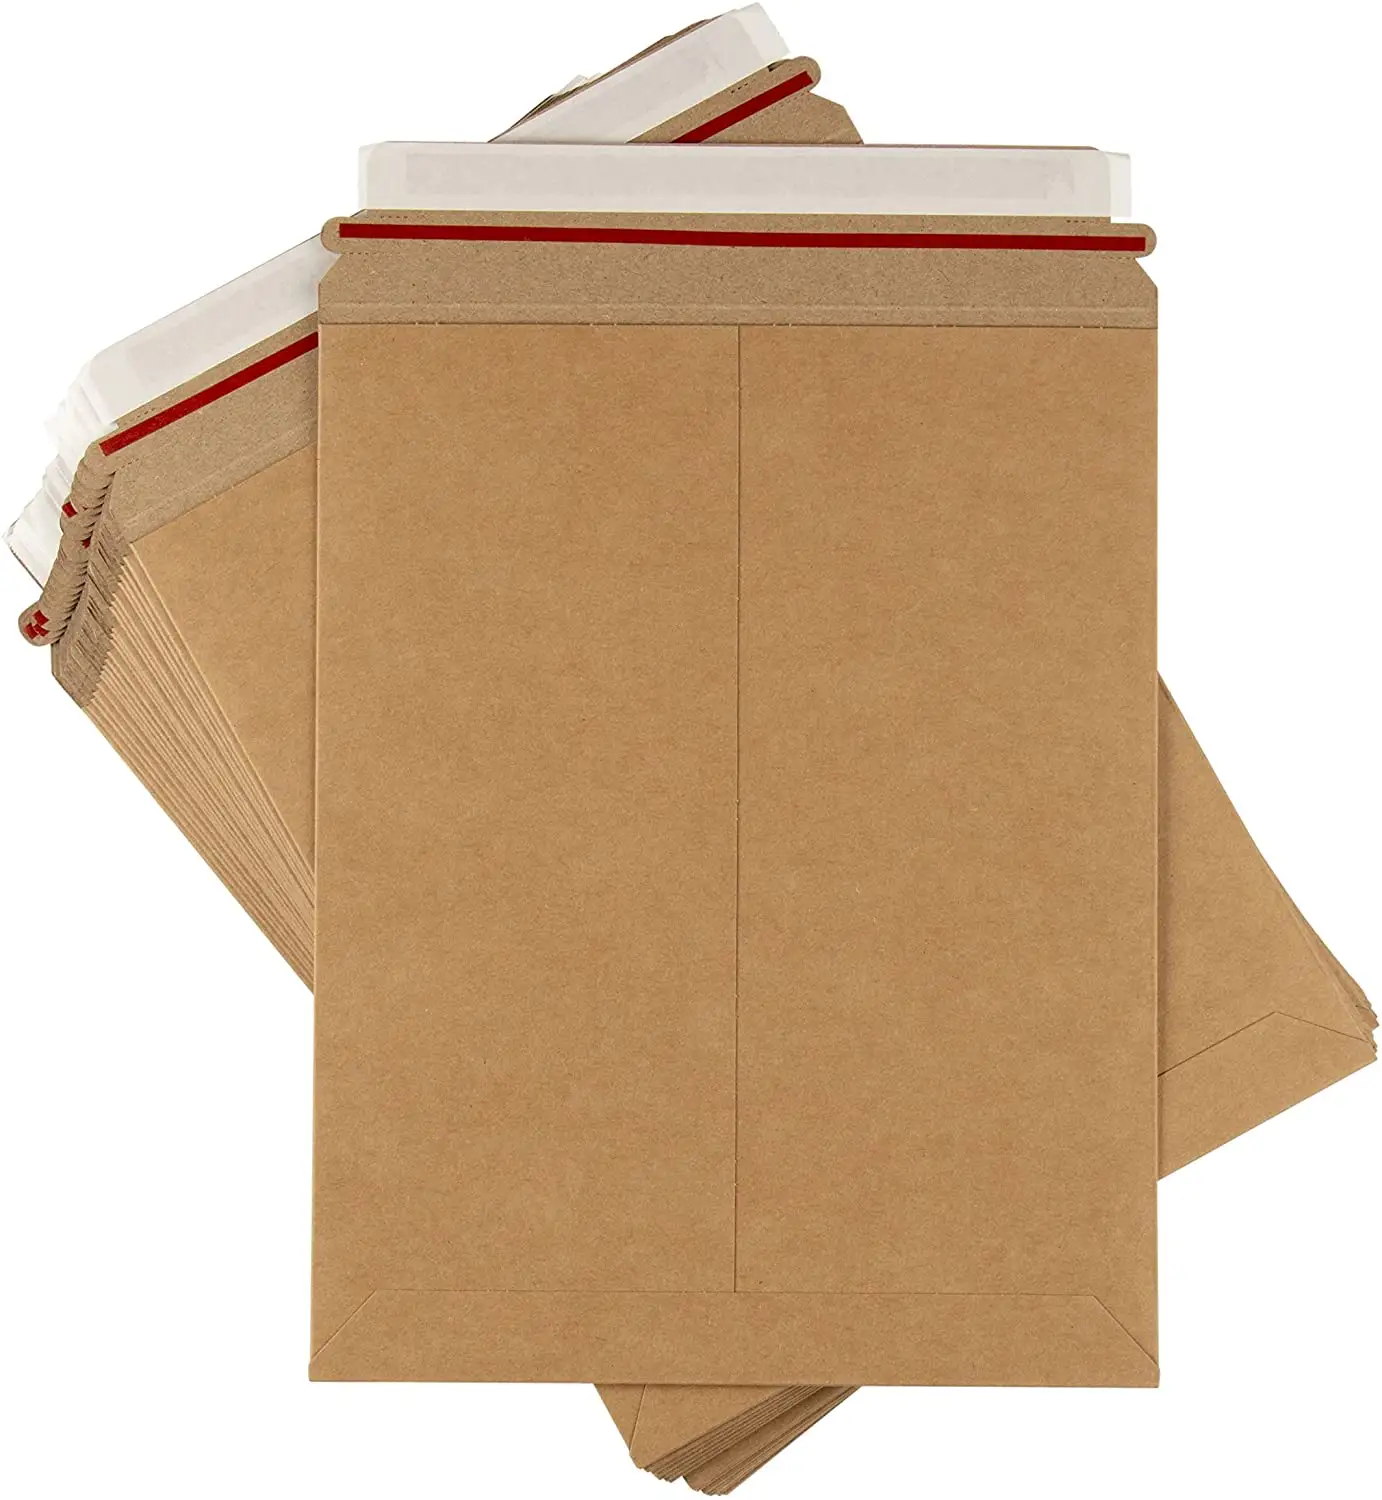 Custom Design Milieuvriendelijke Kraftpapier Grote Vorm Mailer Kleding Verzending Enveloppen Verpakking Voor Kleding Winkel, Boekwinkels,